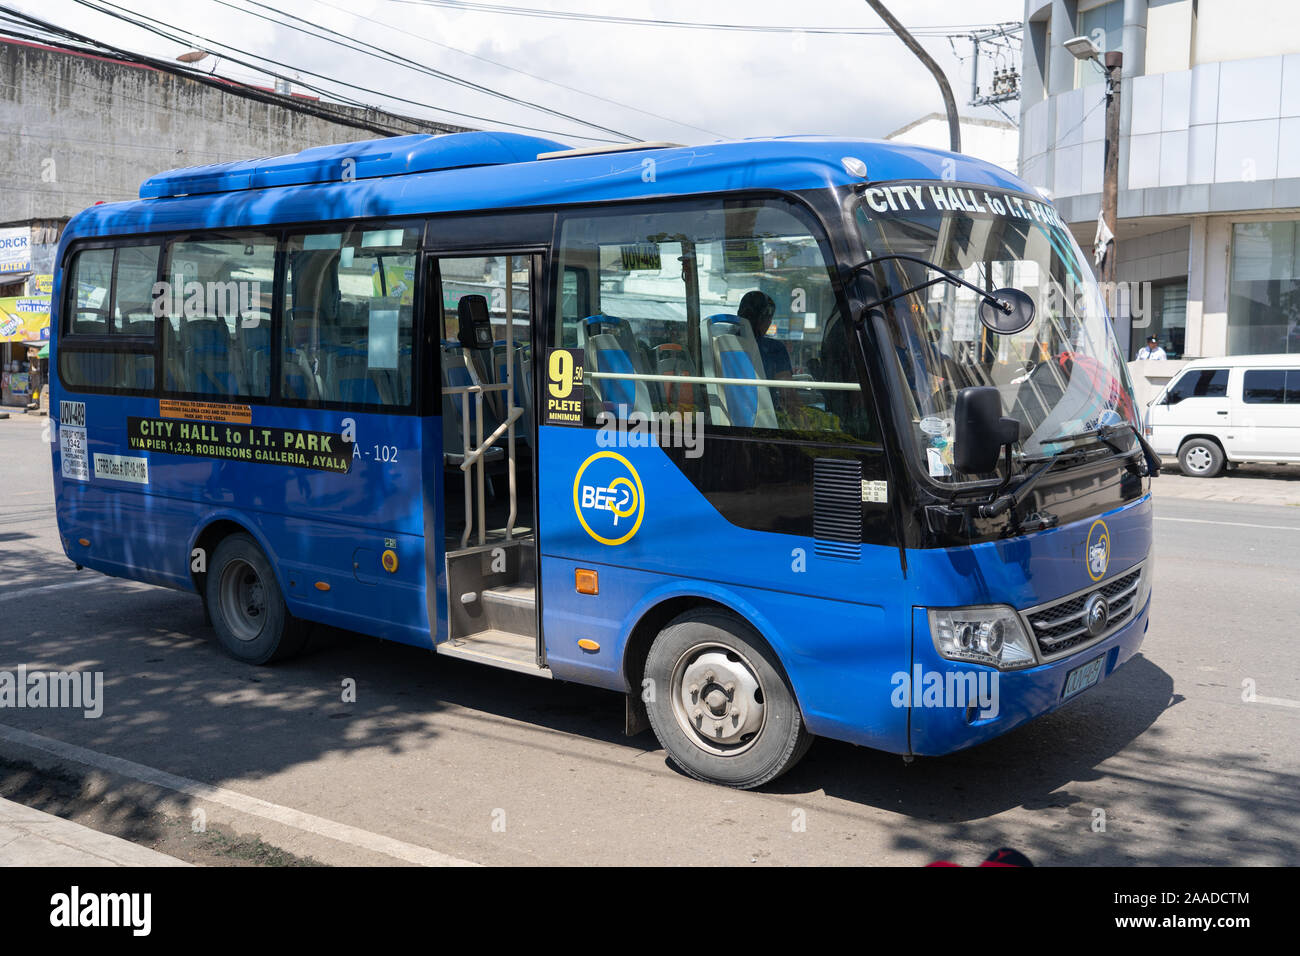 Eine neue Art des Transportes vor kurzem in Cebu City, eingeführt als ein Signalton bekannt. Lokal als Beepney diese Art von Fahrzeug mit Klimaanlage bekannt Stockfoto